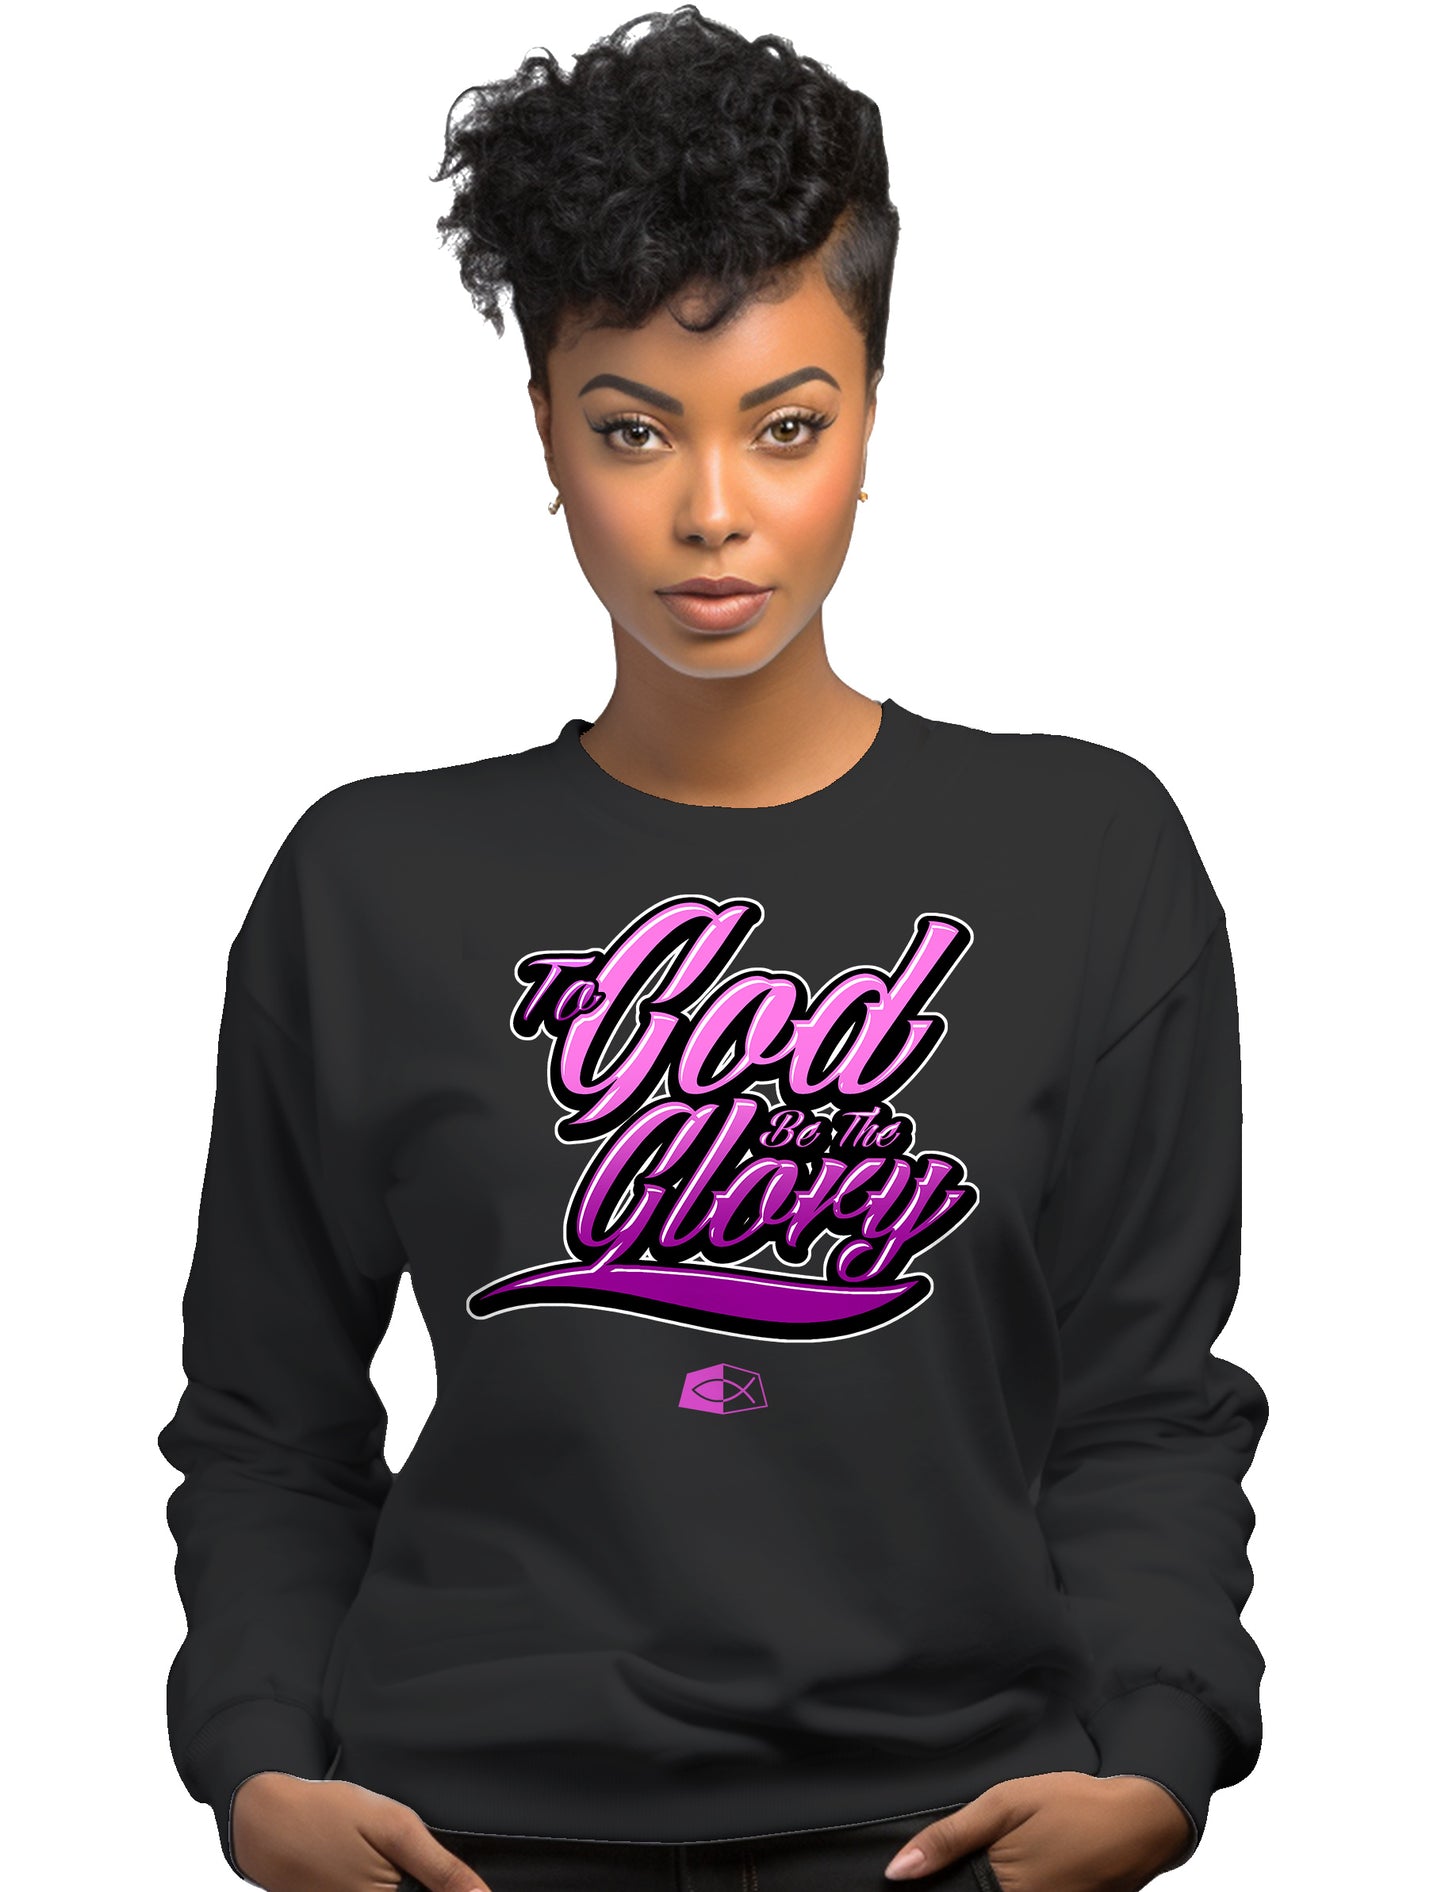 TO GOD BE THE GLORY - Women’s premium Unisex sweatshirt